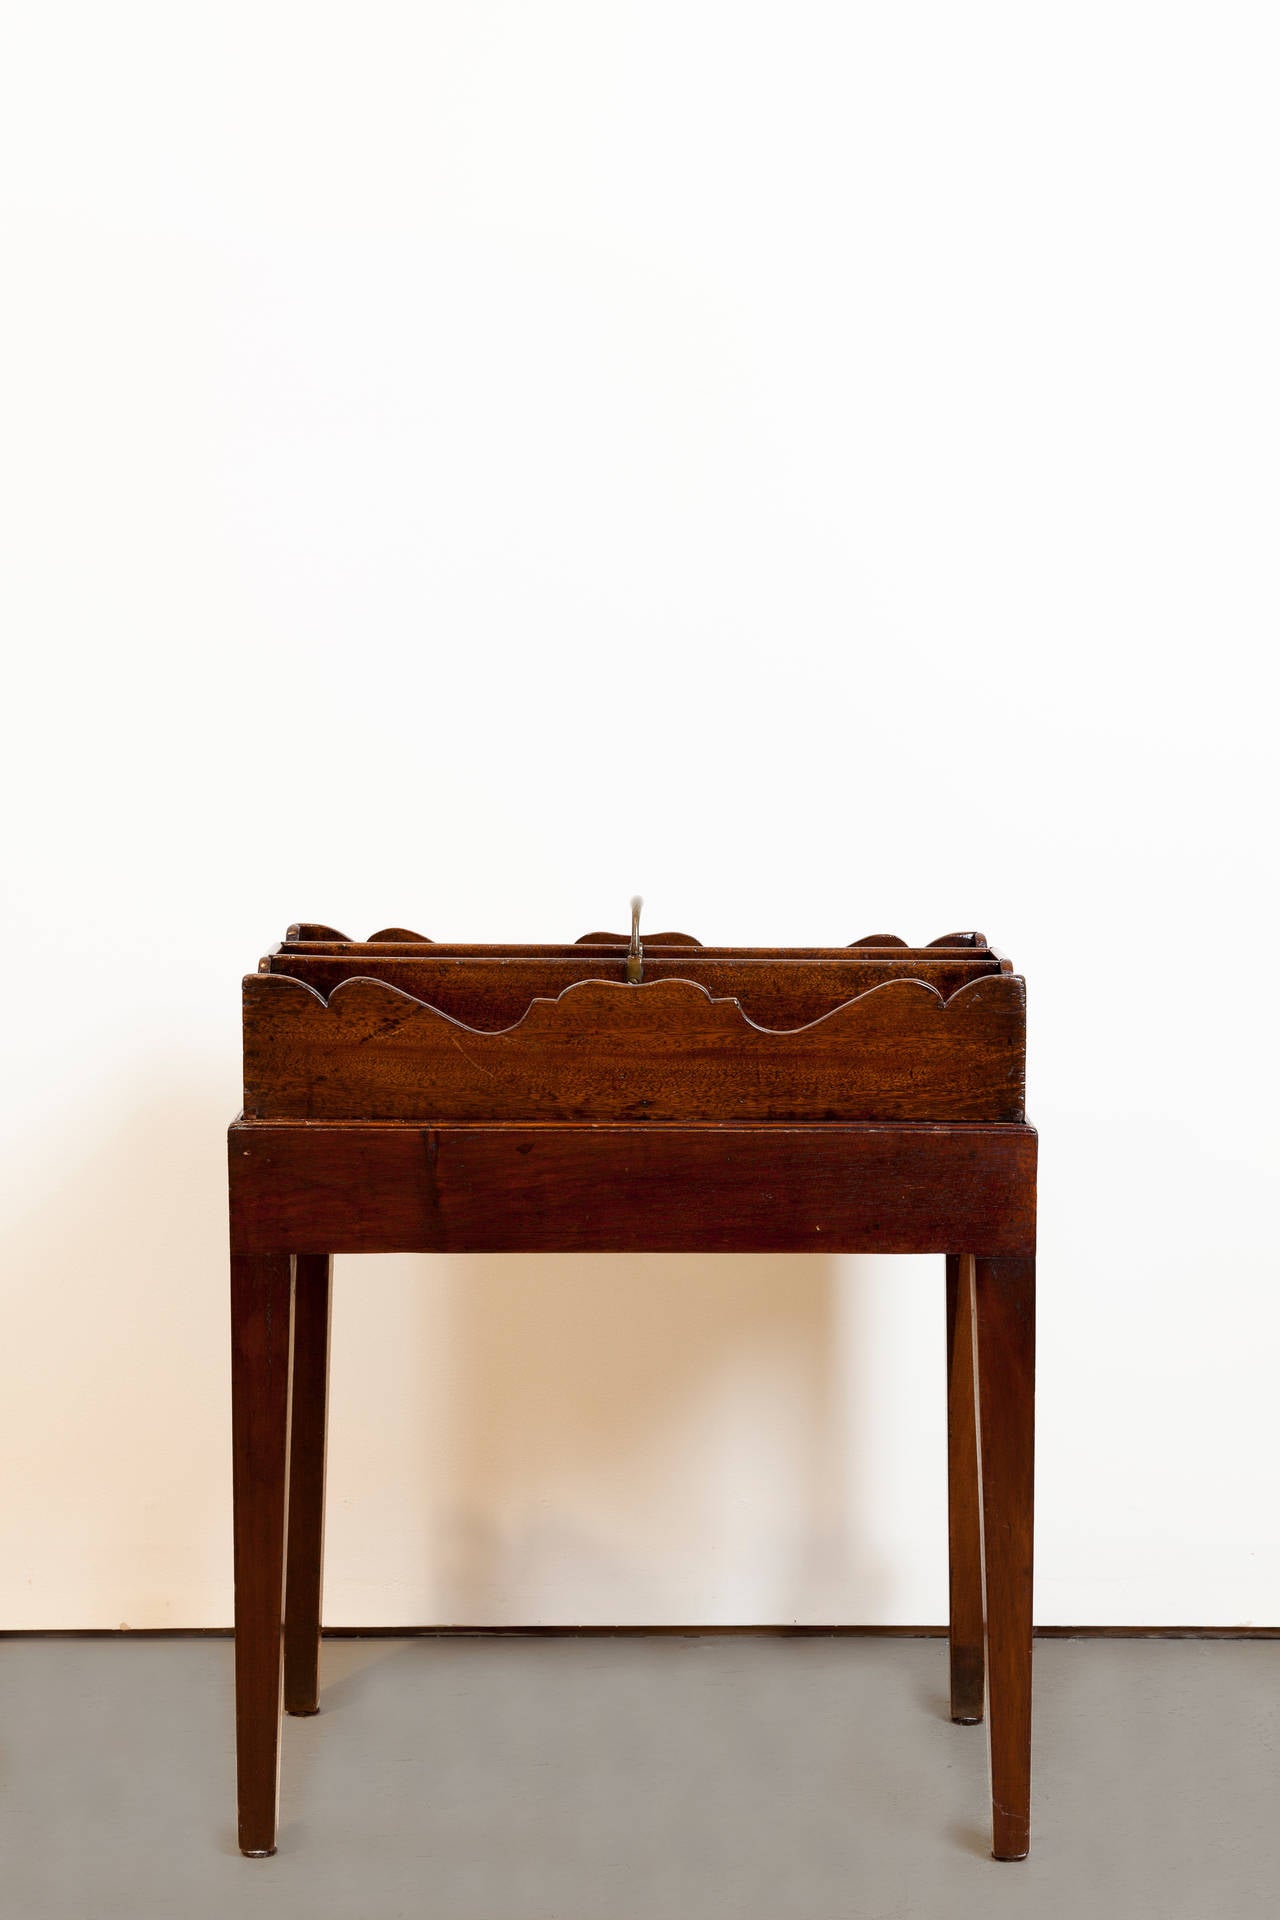 19th century English mahogany cutlery tray on stand. Beautiful patina.